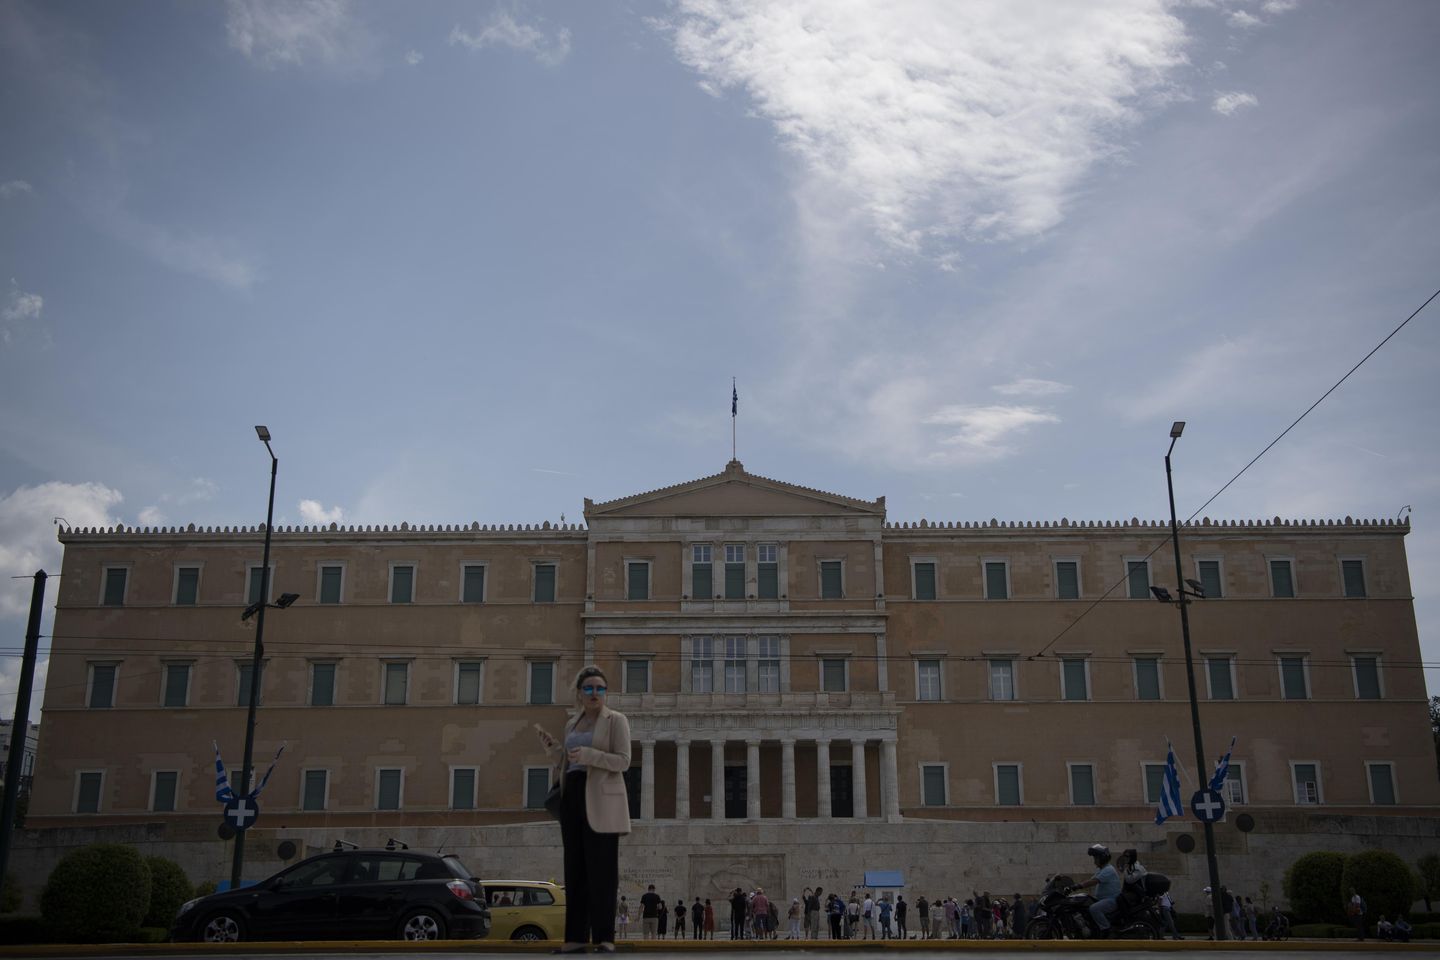 Yunanistan, uluslararası kurtarma harcama kontrollerinin sona ermesinden bu yana ilk seçimde oy kullandı